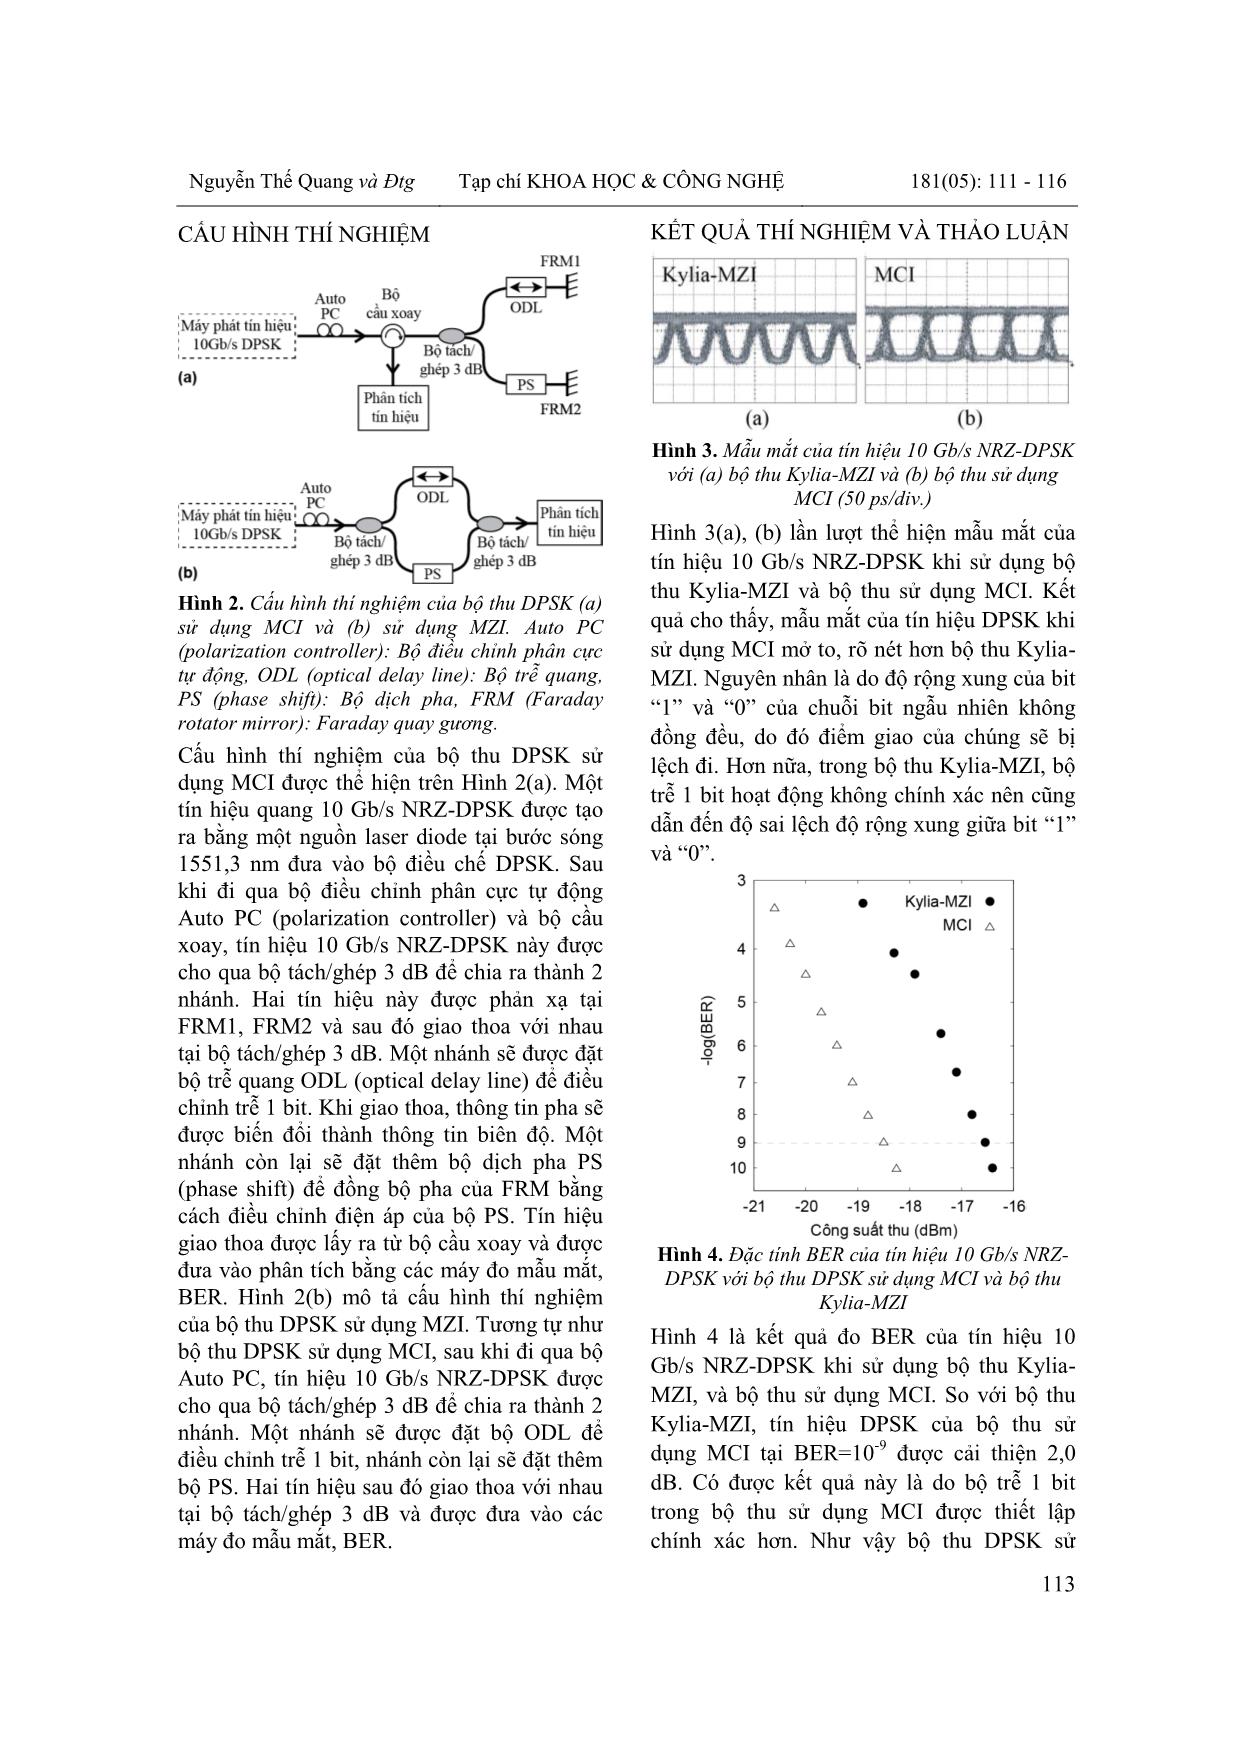 Nghiên cứu bộ thu dpsk sử dụng giao thoa kế Michelson với Faraday quay gương trang 3